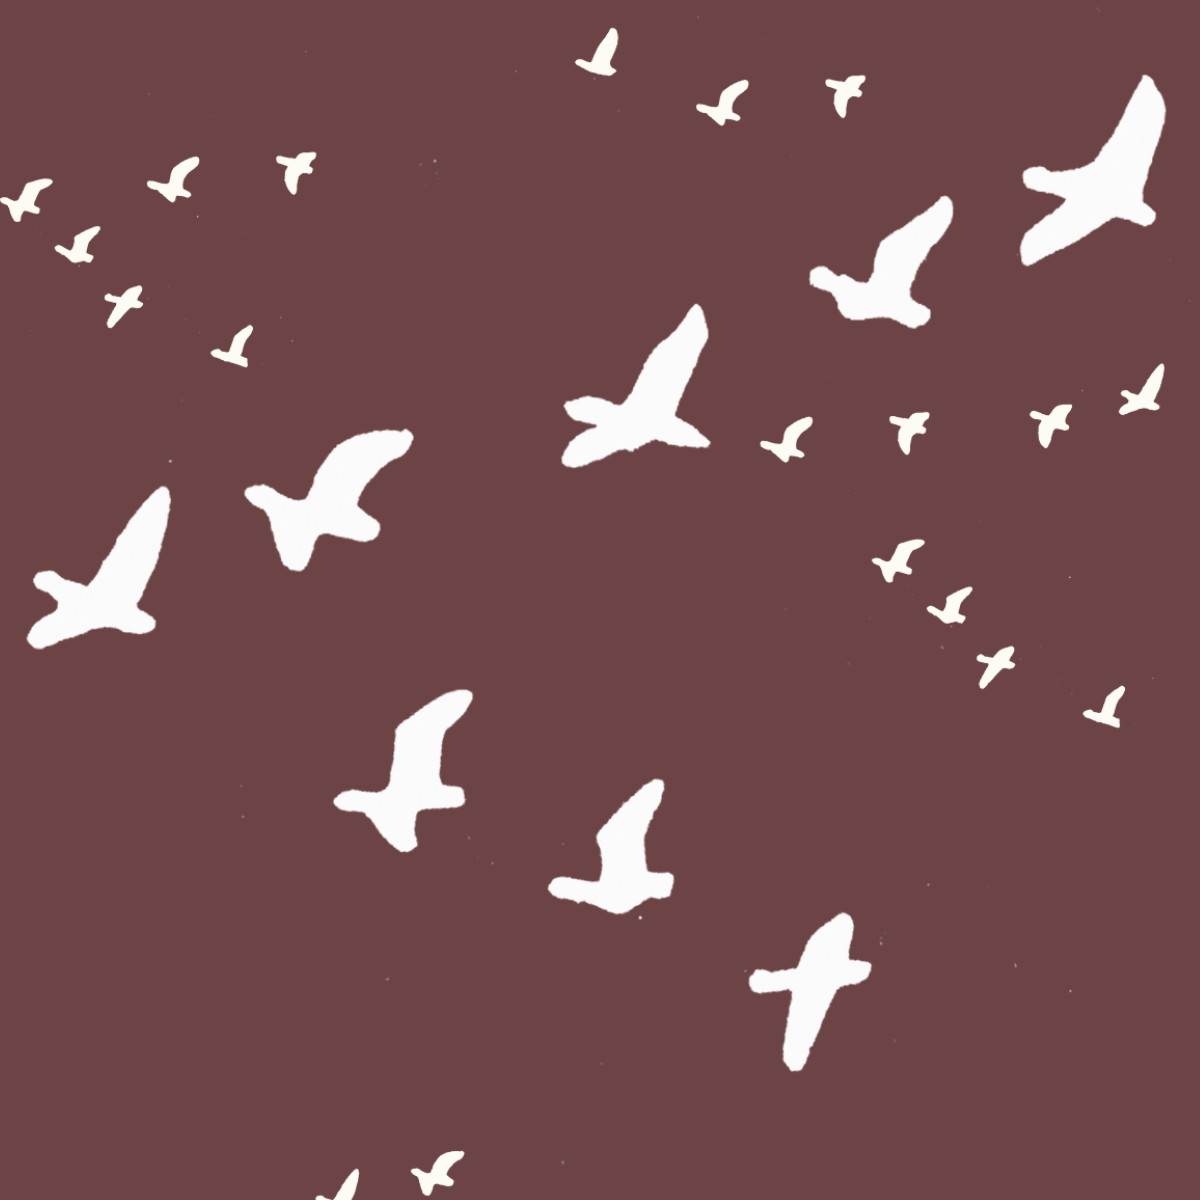 CALEB BROOKS' PEIPEI: Flock in Flight